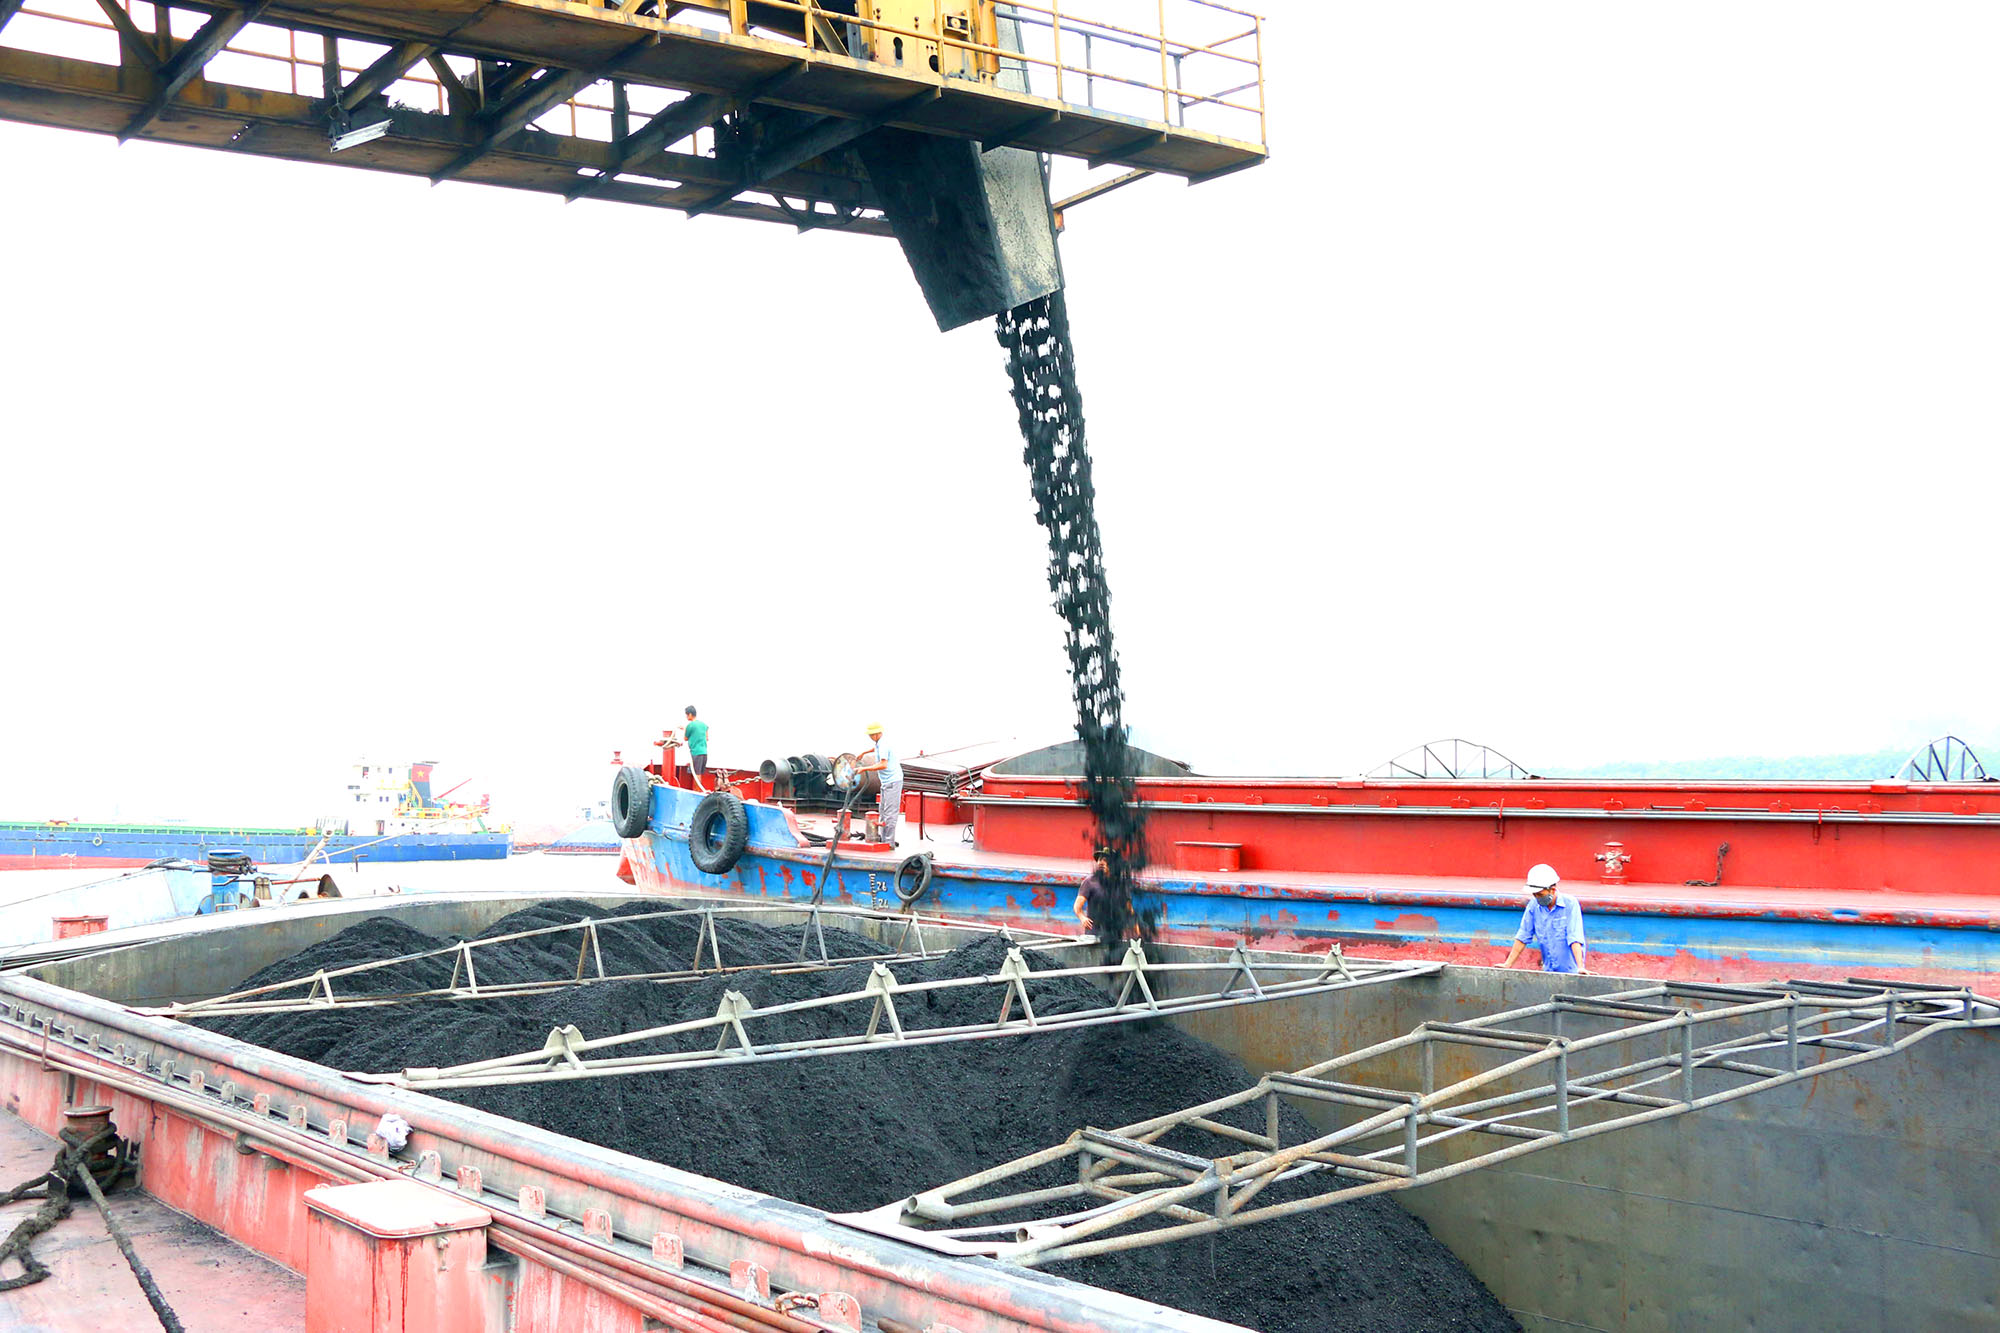 Năm 2021, Tập đoàn Công nghiệp Than - Khoáng sản Việt Nam phấn đấu tiêu thụ 42 triệu tấn than. Trong ảnh: Hoạt động bốc rót than tiêu thụ tại cảng Điền Công (Công ty Kho vận Đá Bạc).